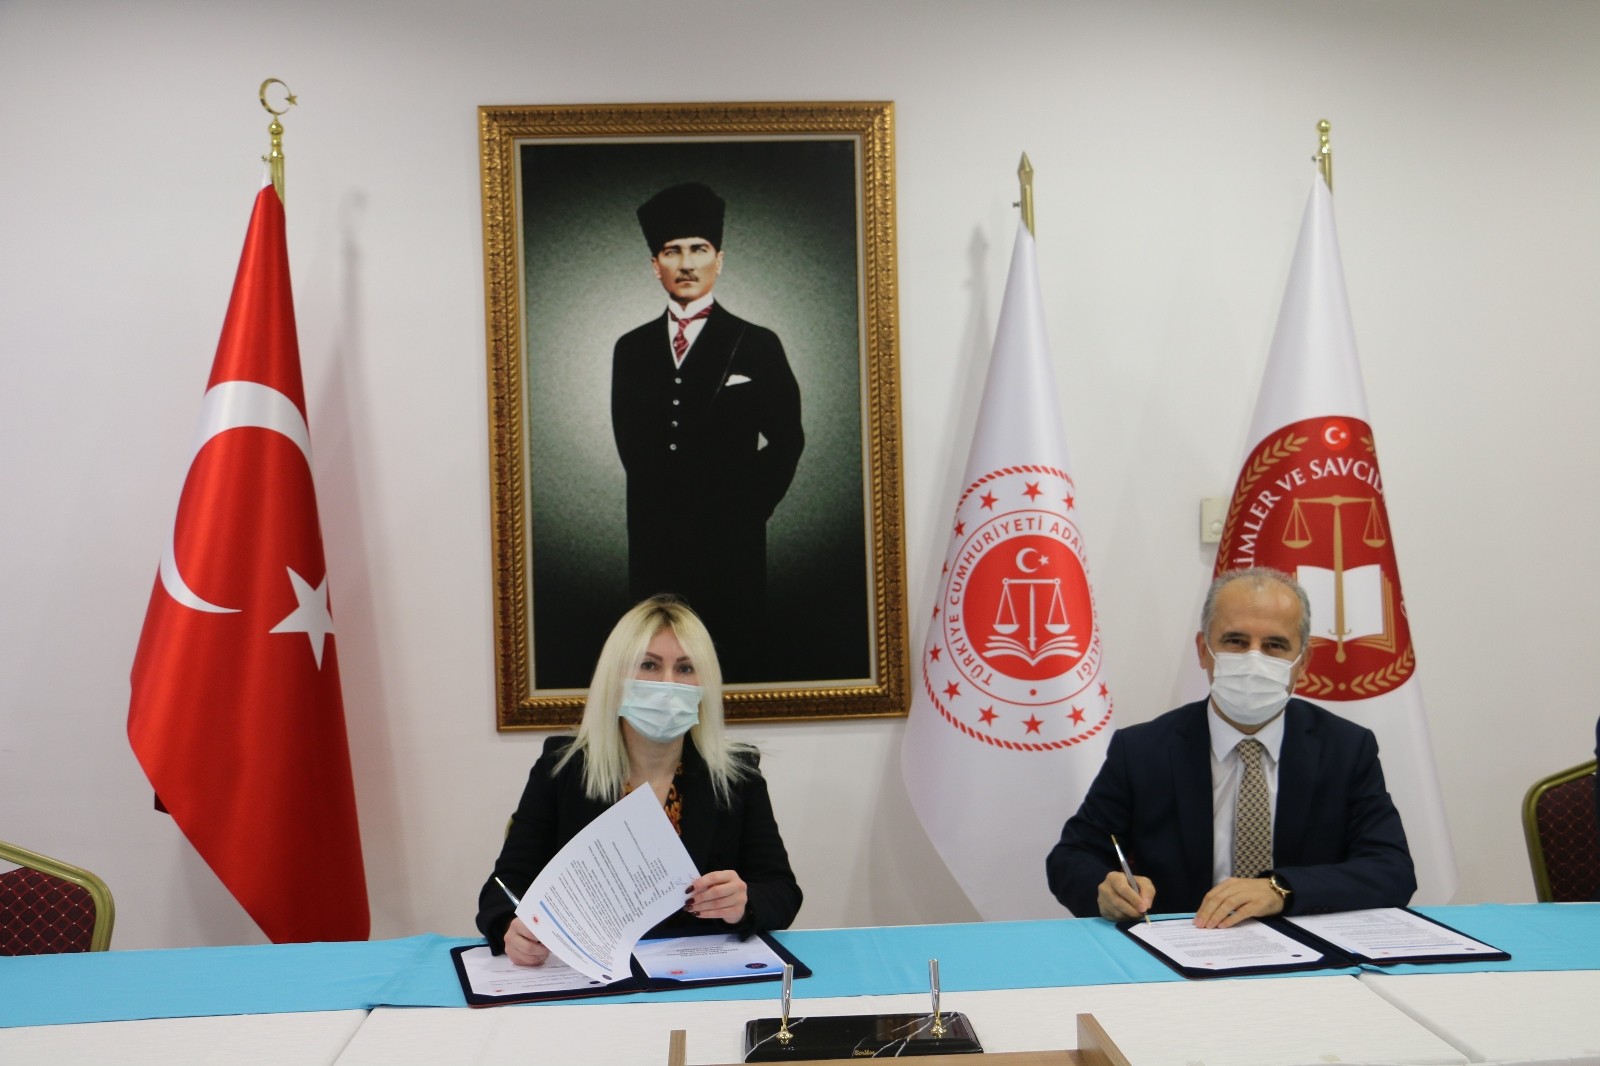 Antalya Cumhuriyet Başsavcılığı ile Akdeniz Üniversitesi Rektörlüğü arasında lisansüstü eğitim işbirliği protokolü imzalandı.